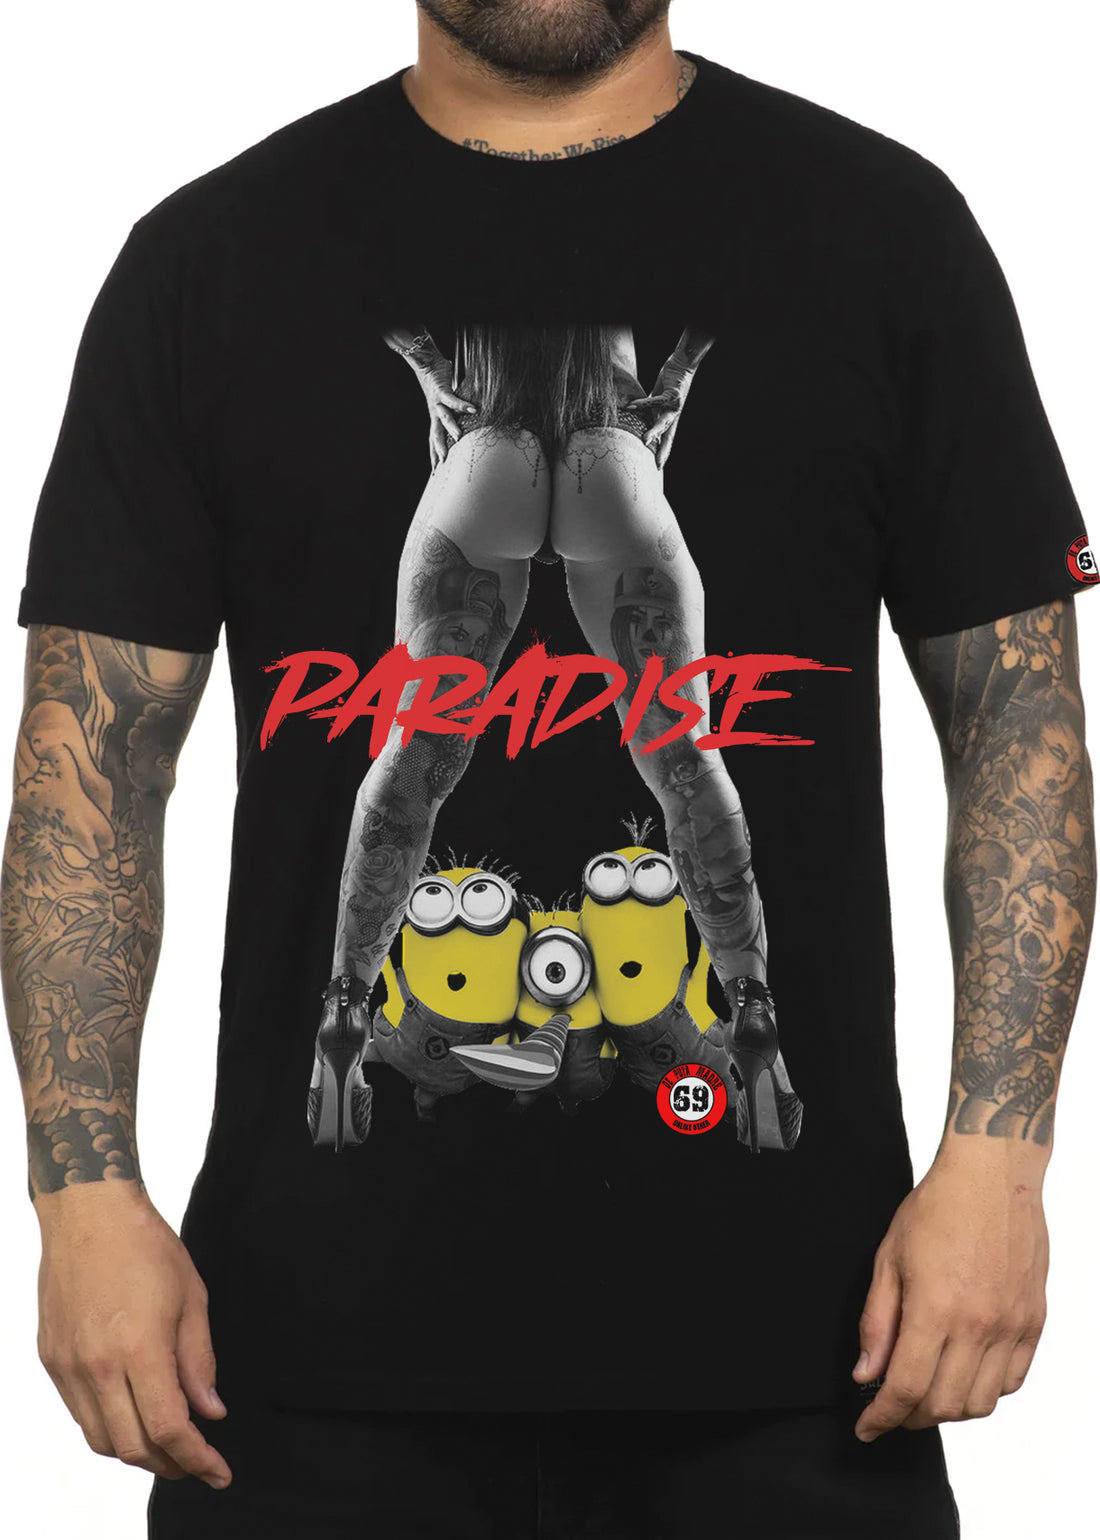 T-shirt da uomo DPM 69 design Paradiso!